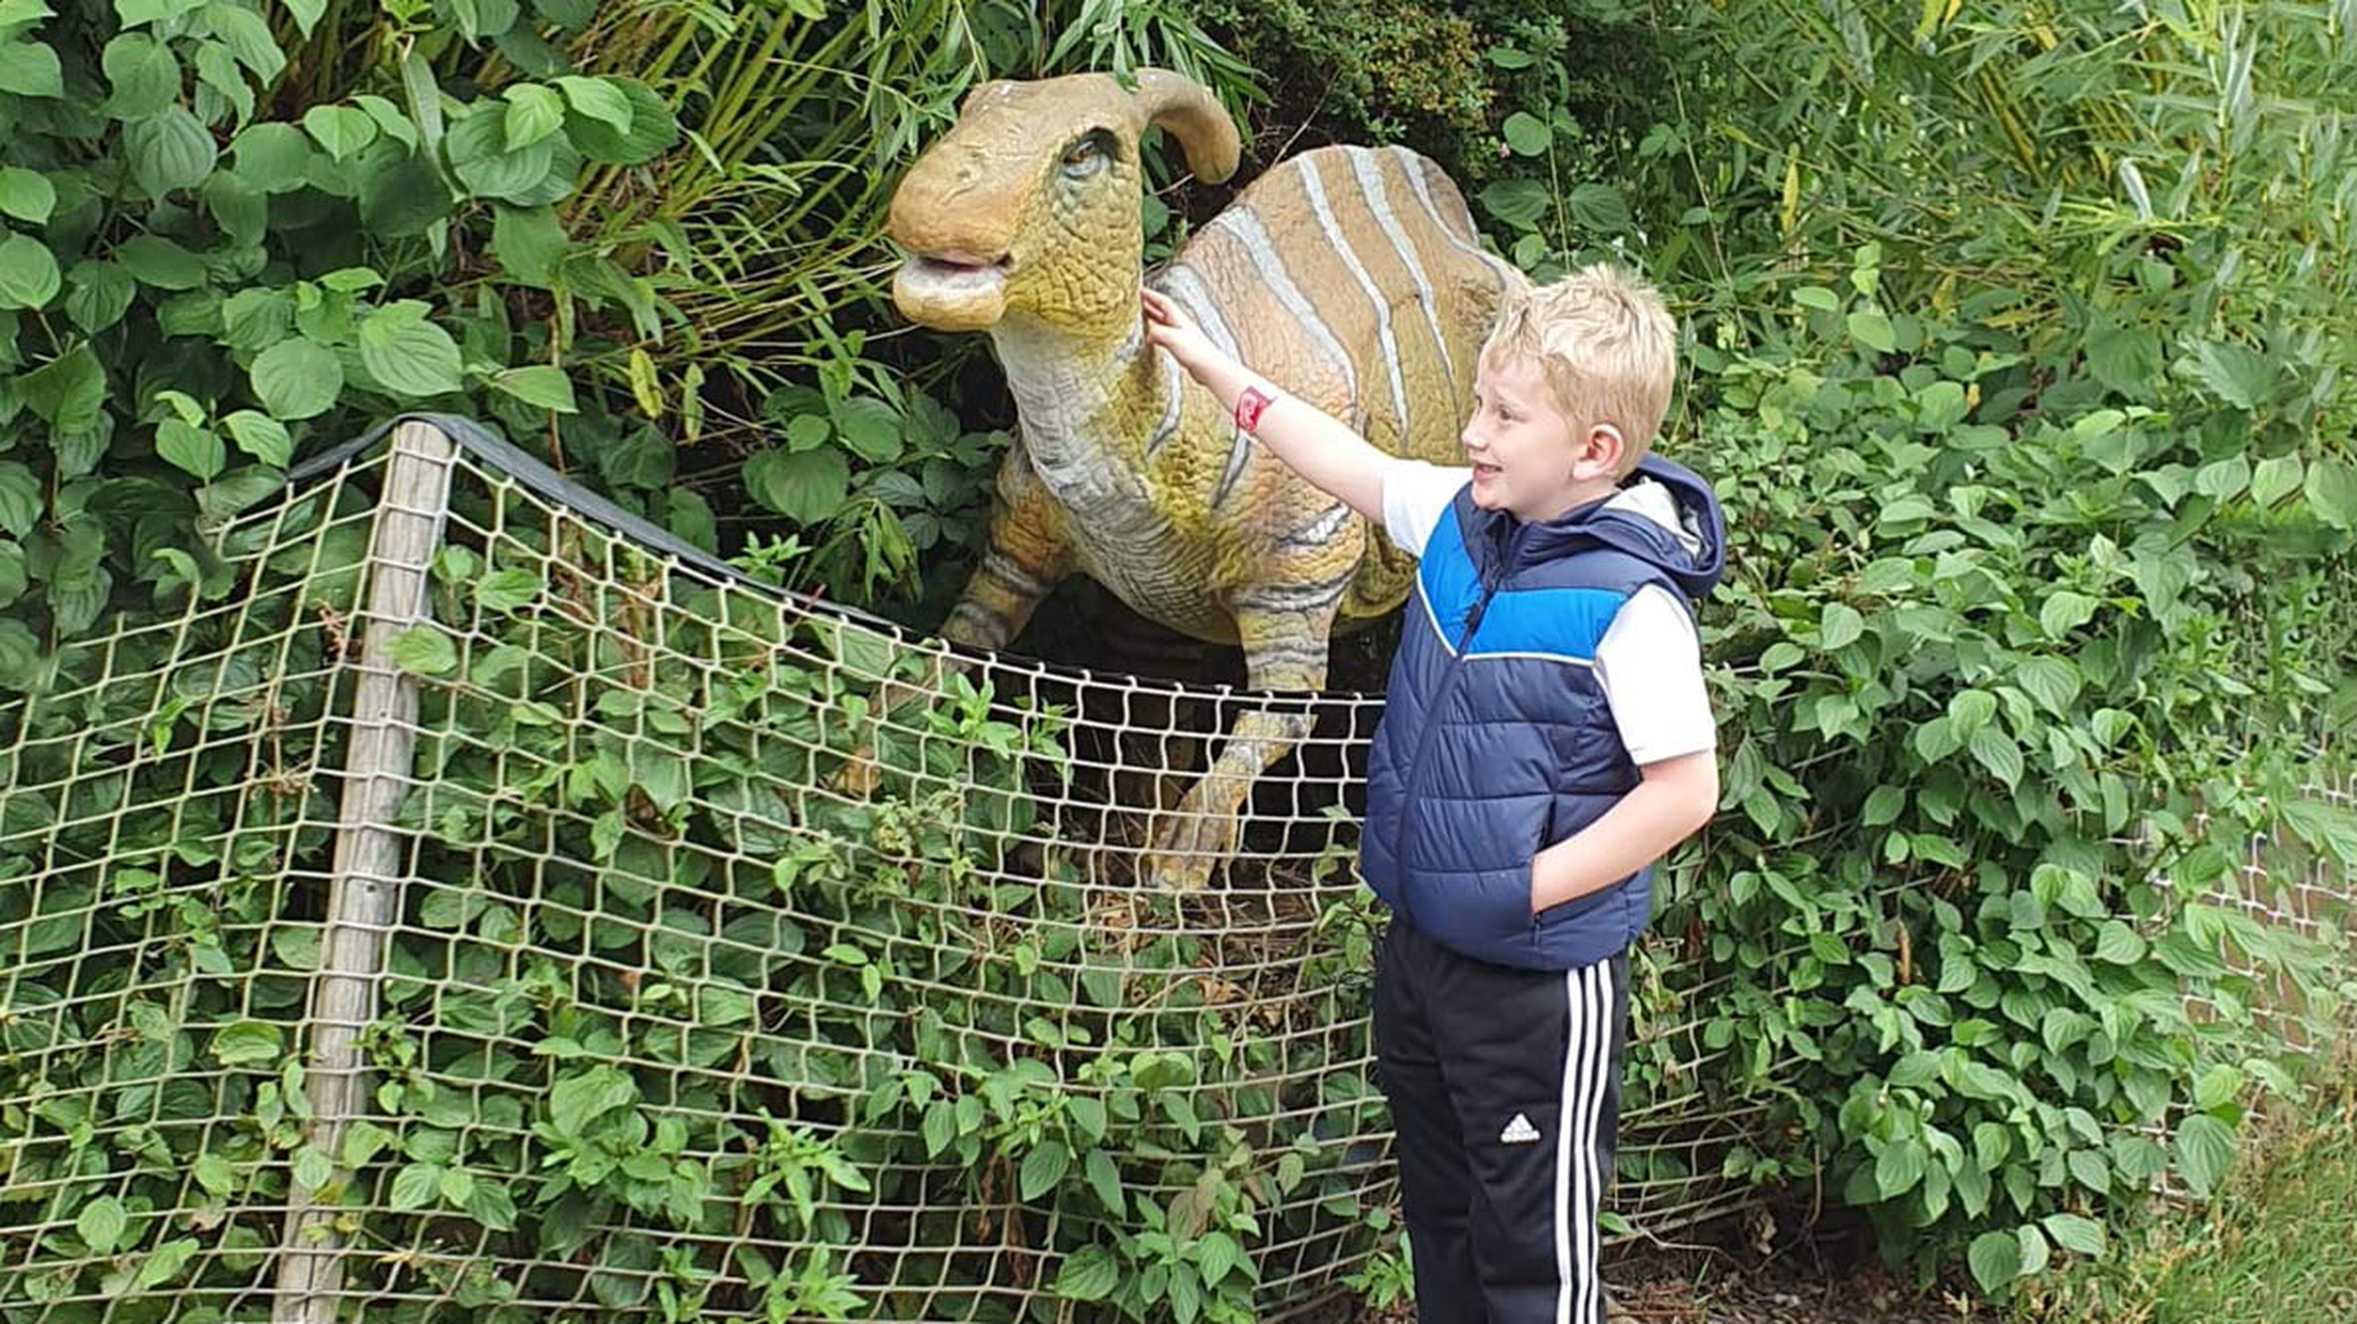 Lewis stroking a dinosaur